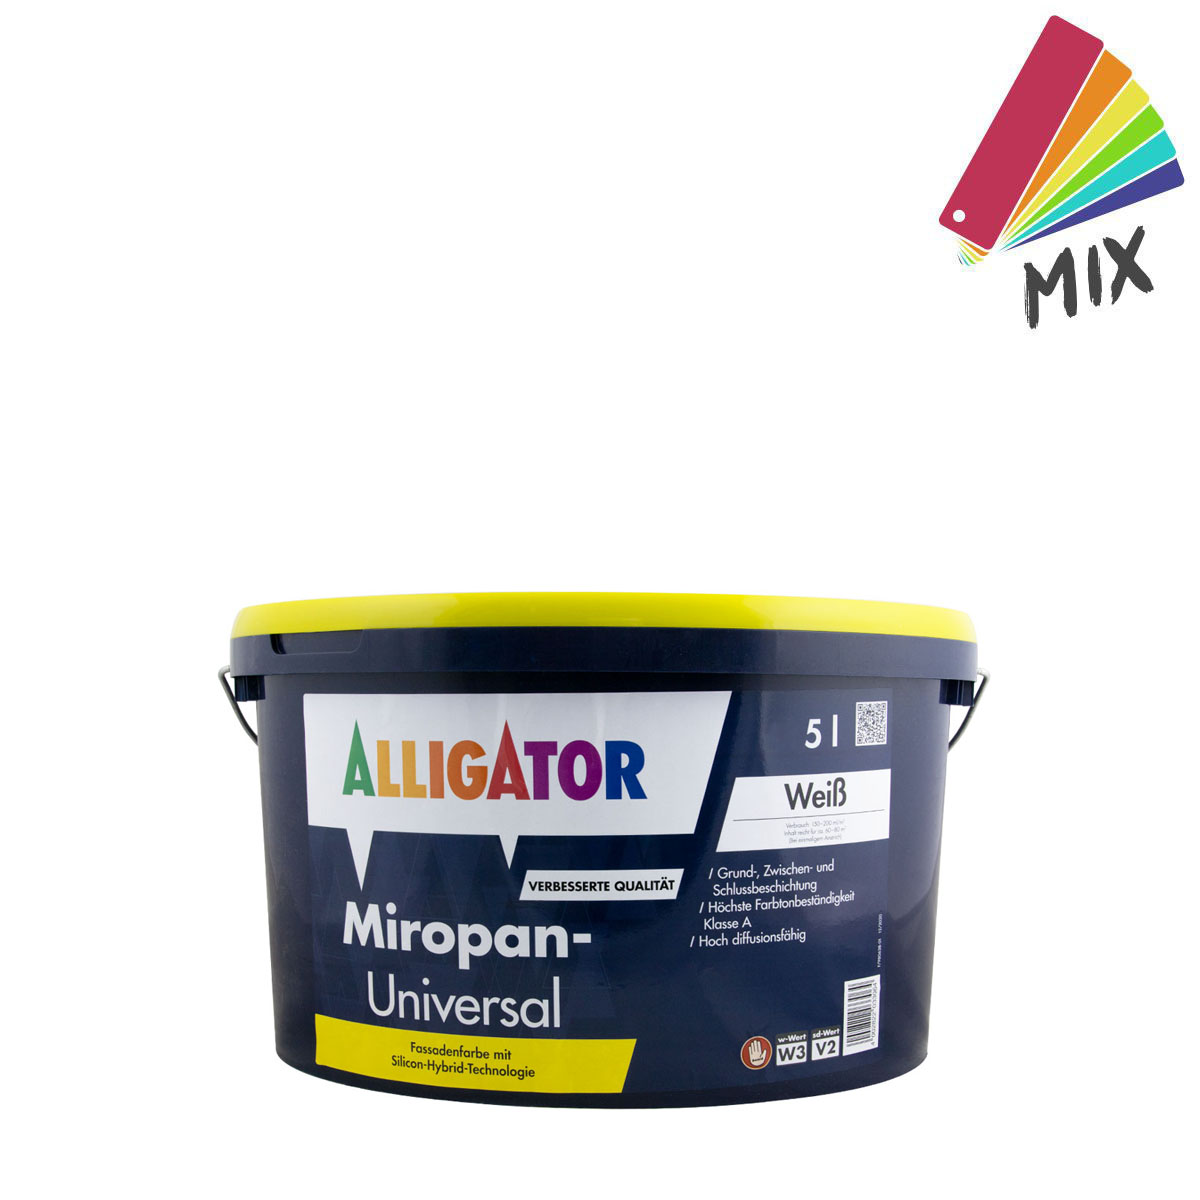 Alligator Miropan-Universal 5L wunschfarbton PG S, Siliconharz-Fassadenfarbe